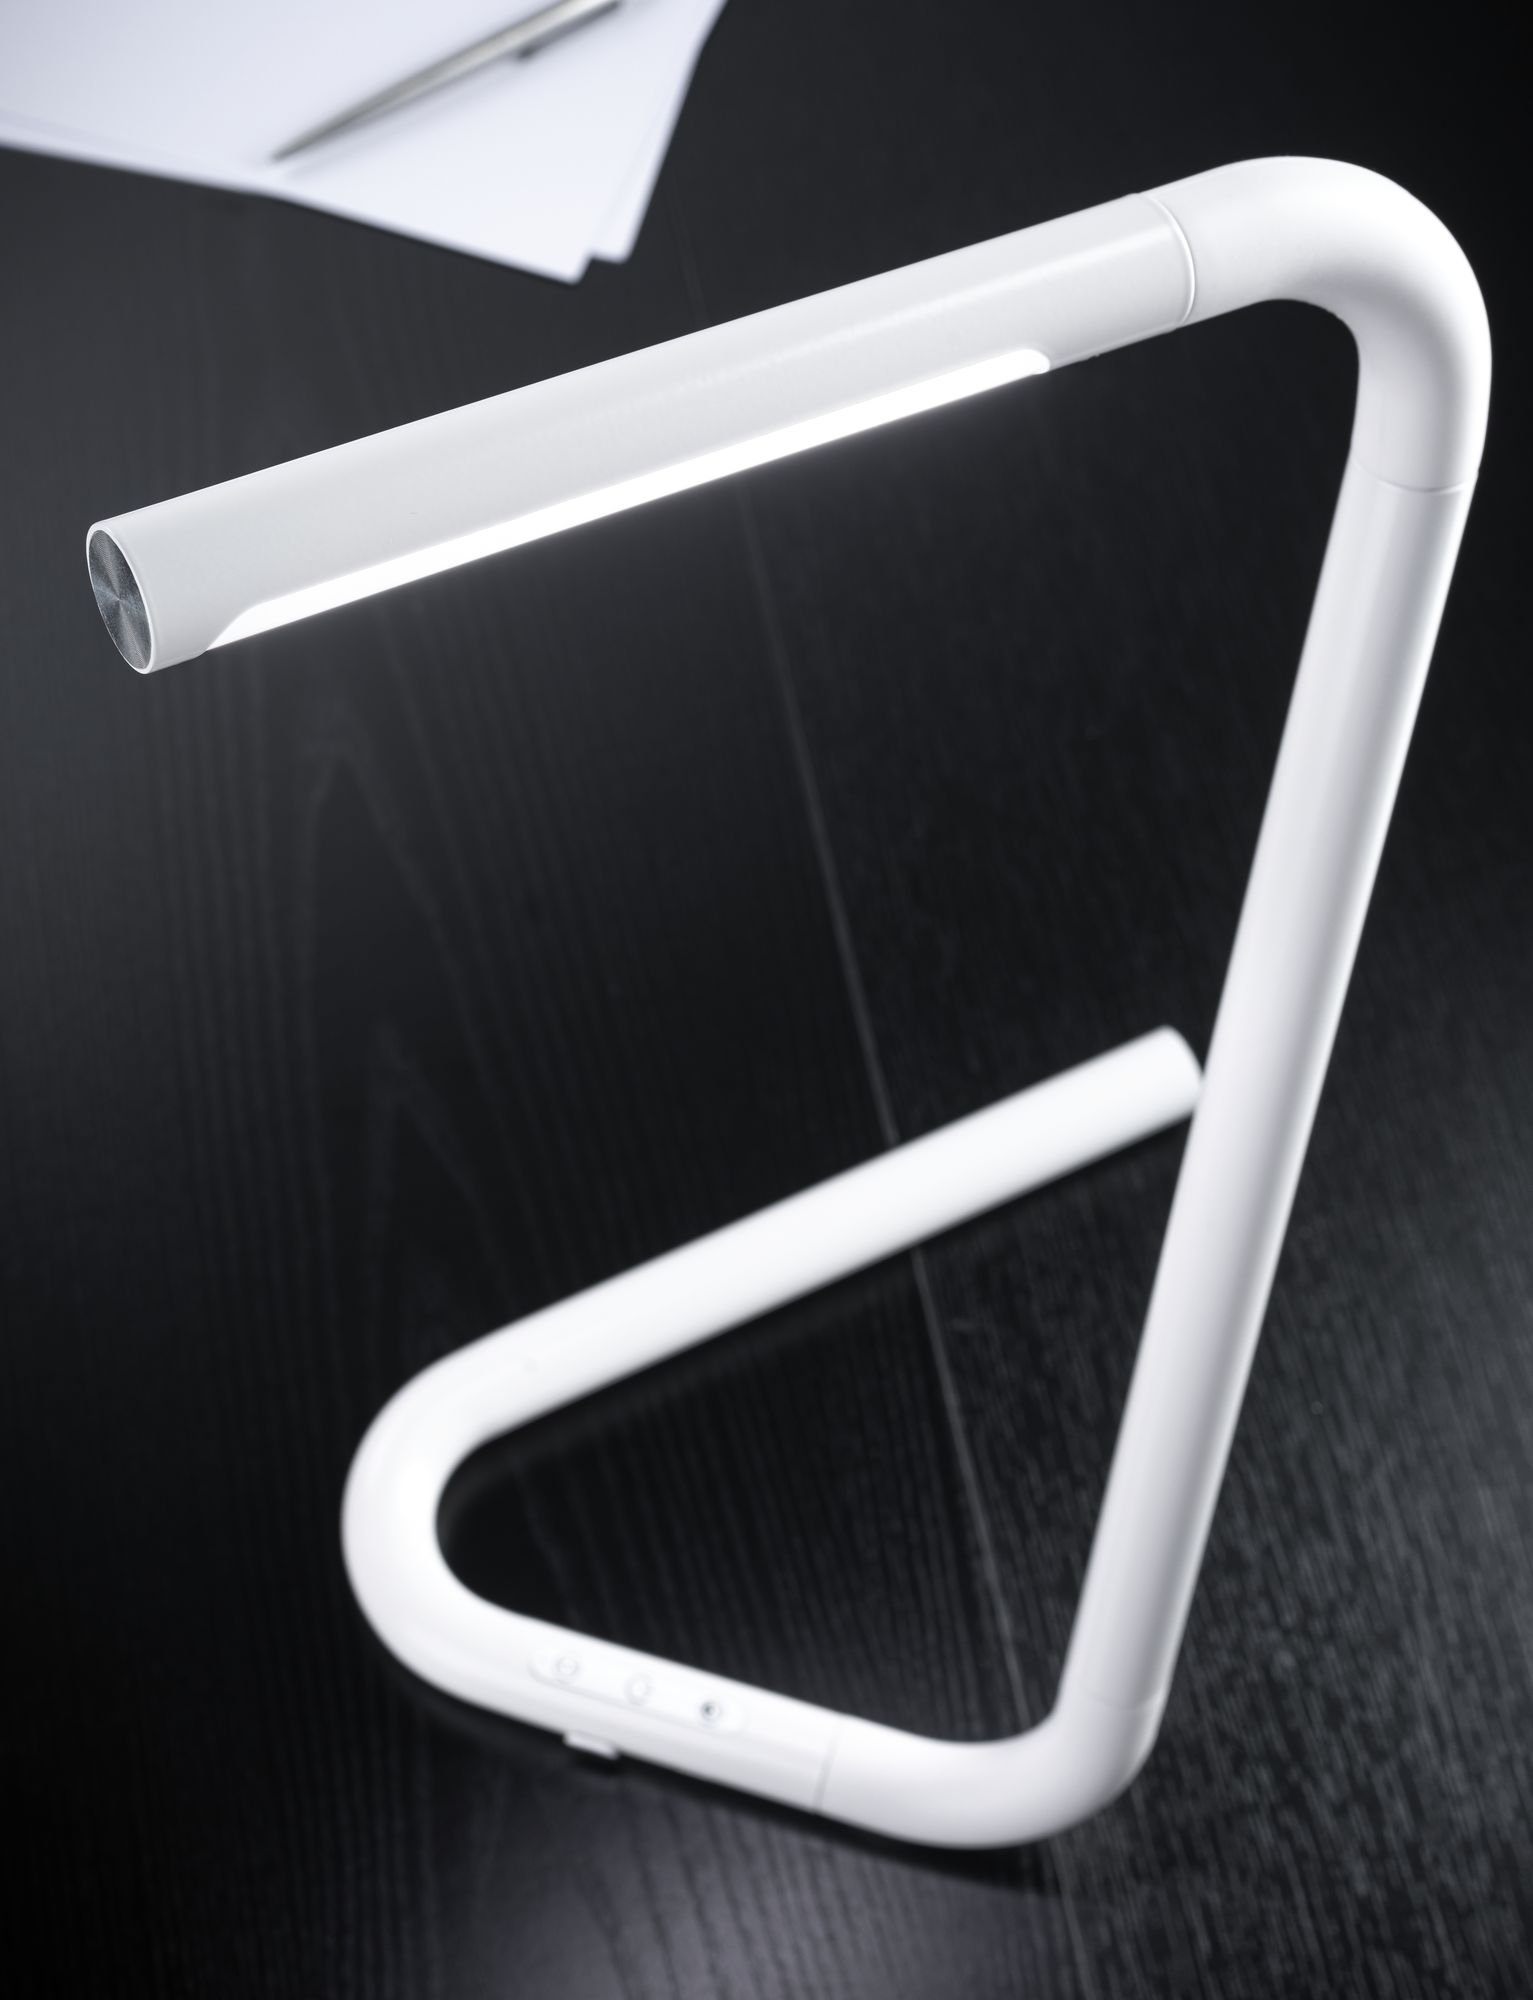 Lampe de bureau LED FlexLink Tunable White 370lm 4,5W Blanc